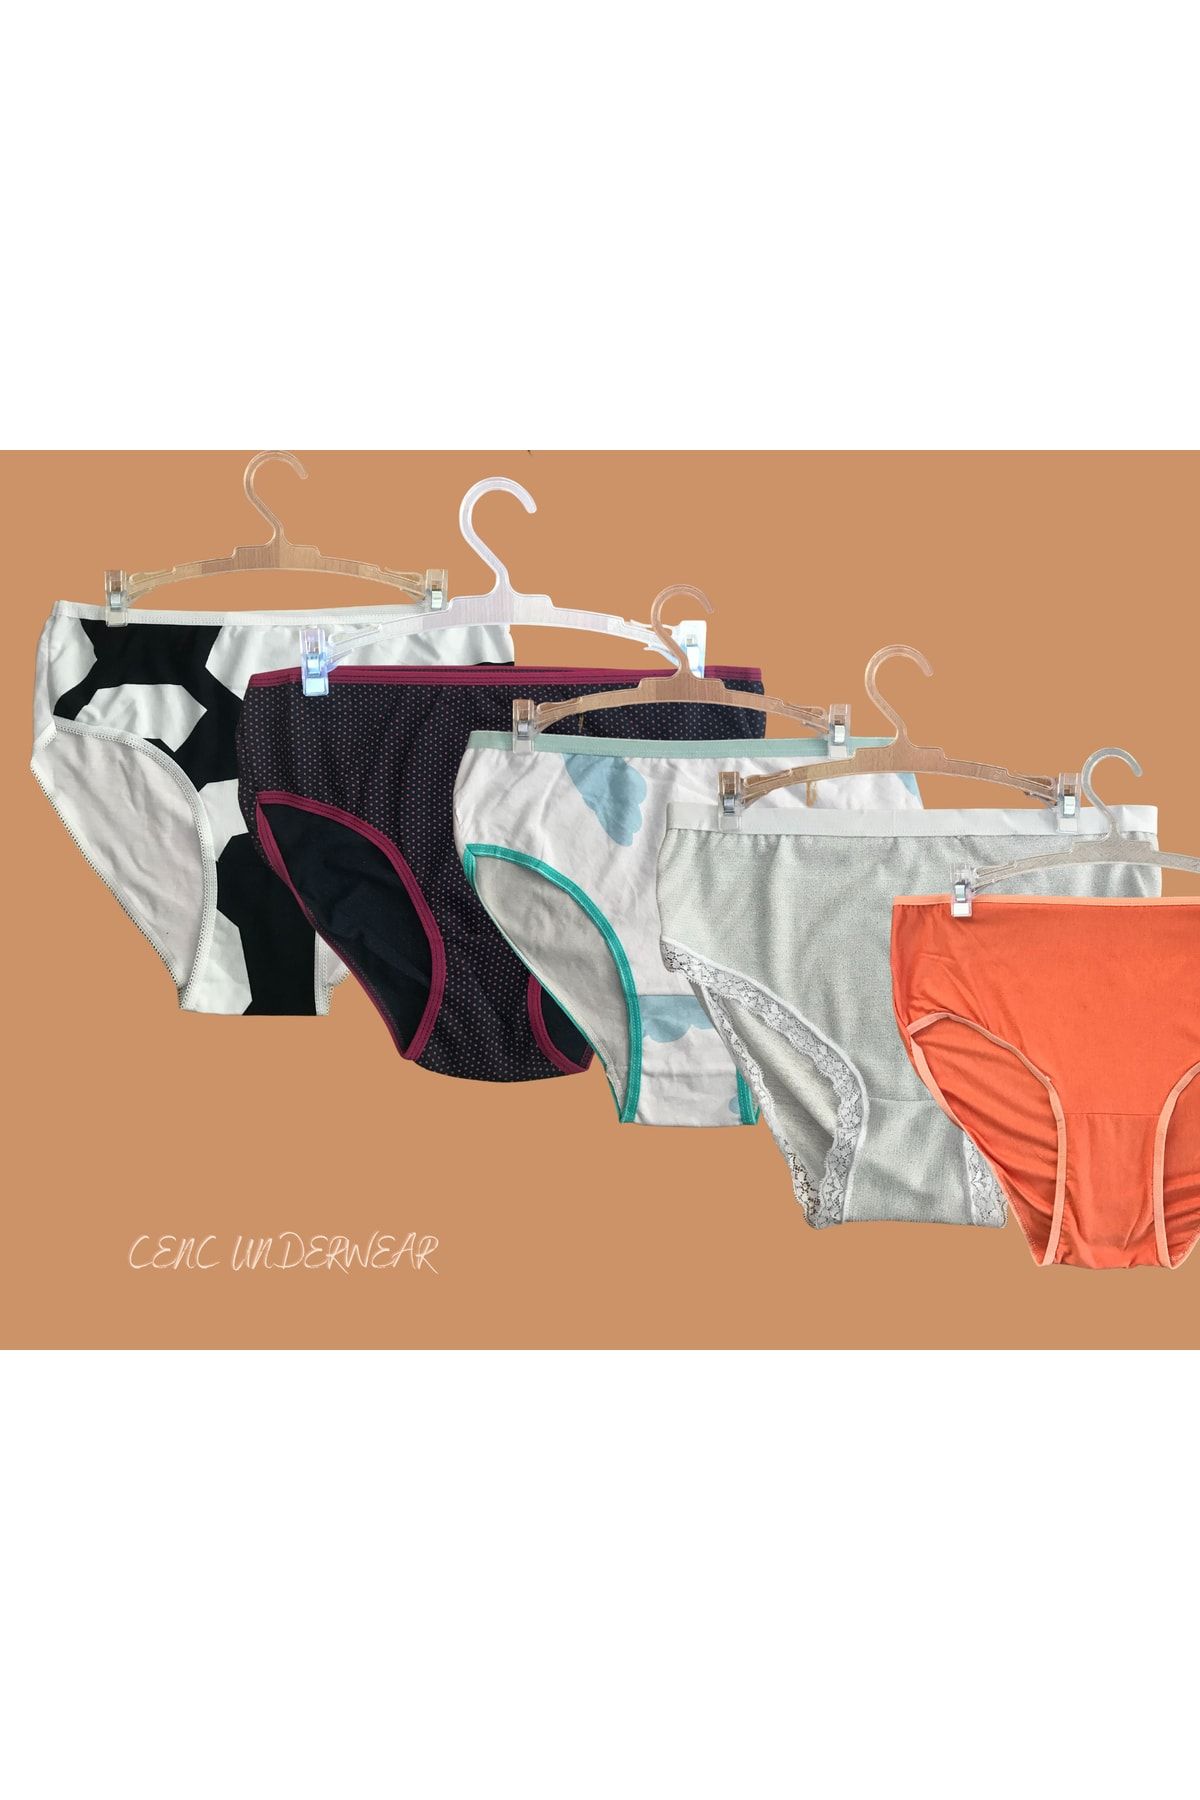 Cenc Underwear Kadın Slip Büyük Beden Külot Ürün Standart Beden Olup L, Xl Bedenlere Uyumludur.